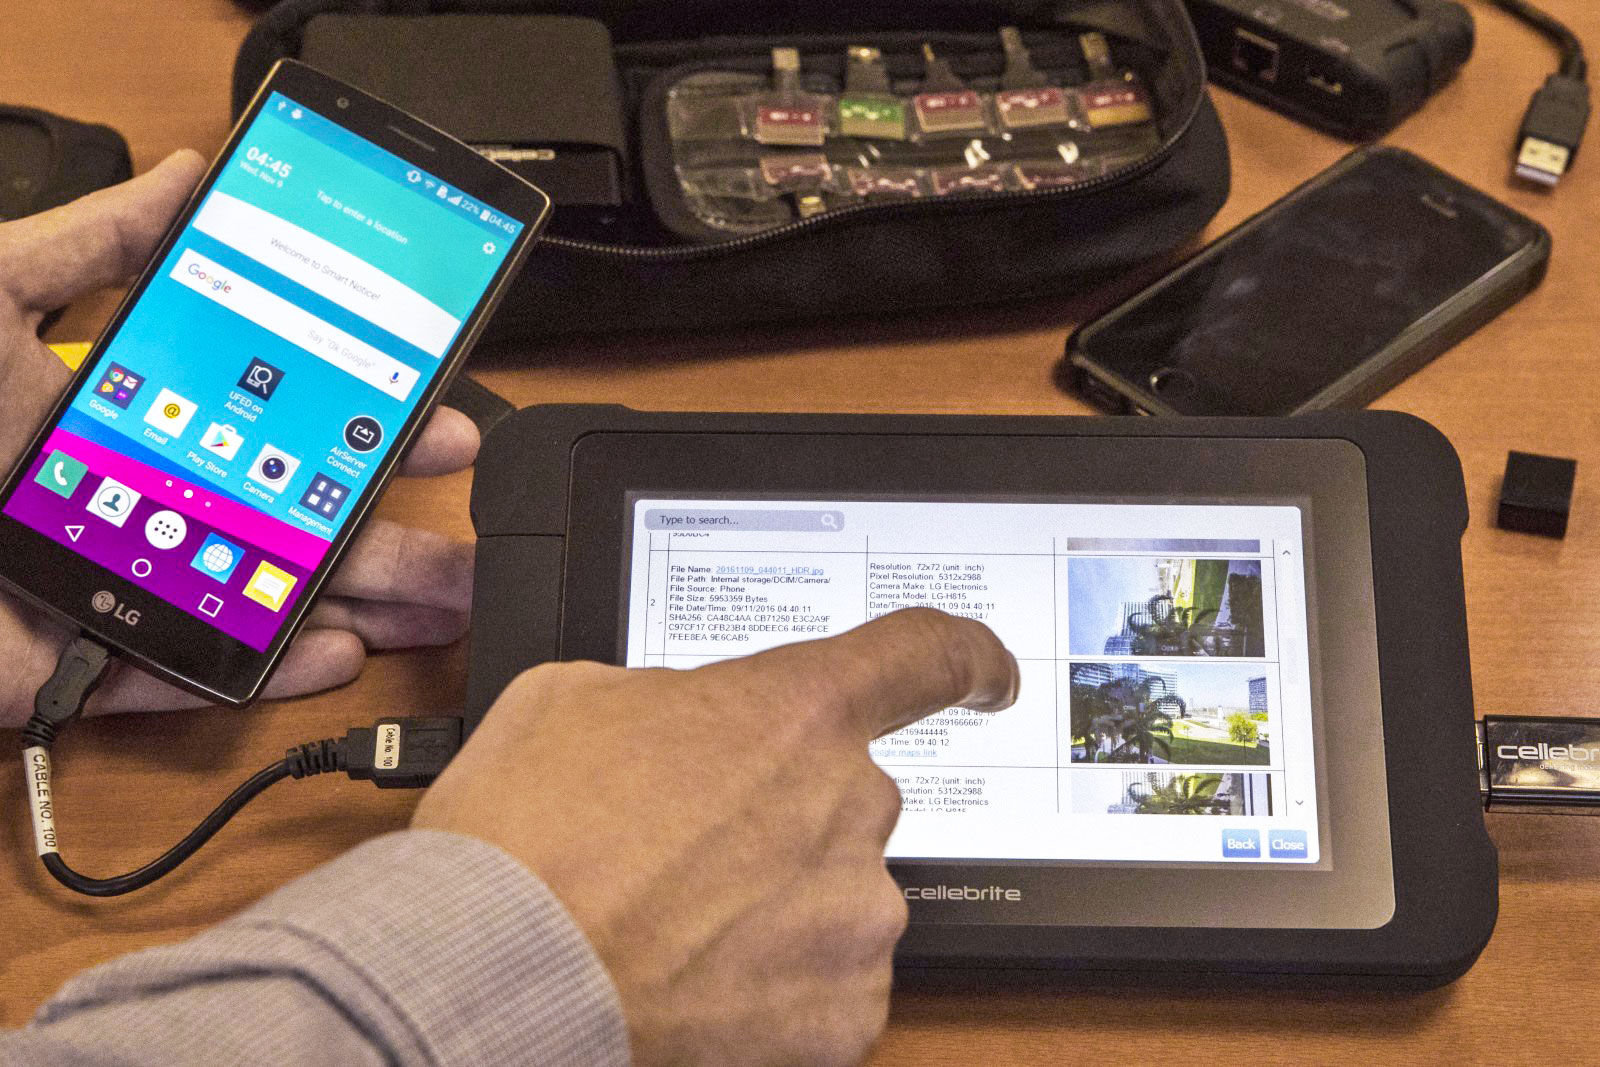 อุปกรณ์แฮ็คสมาร์ทโฟนของตำรวจถูกวางขายออนไลน์ในราคา 3,200 บาท!